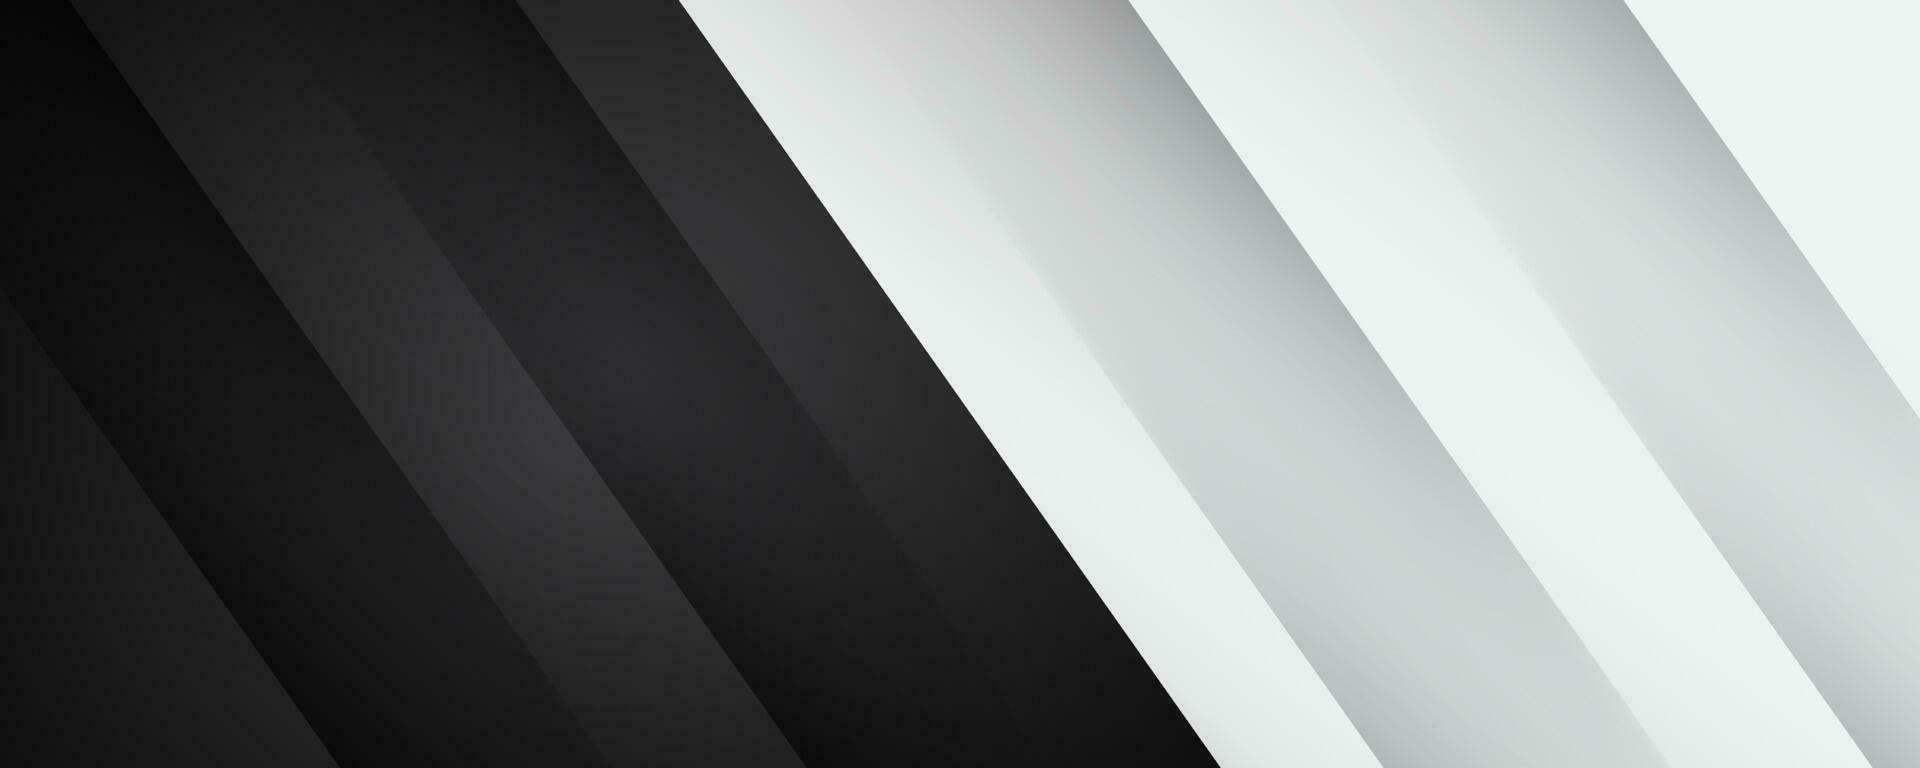 3d svart vit geometrisk abstrakt bakgrund överlappning lager på ljus Plats med snedstreck effekter dekoration. grafisk design element Skära ut stil begrepp för baner, flygblad, kort, eller broschyr omslag vektor